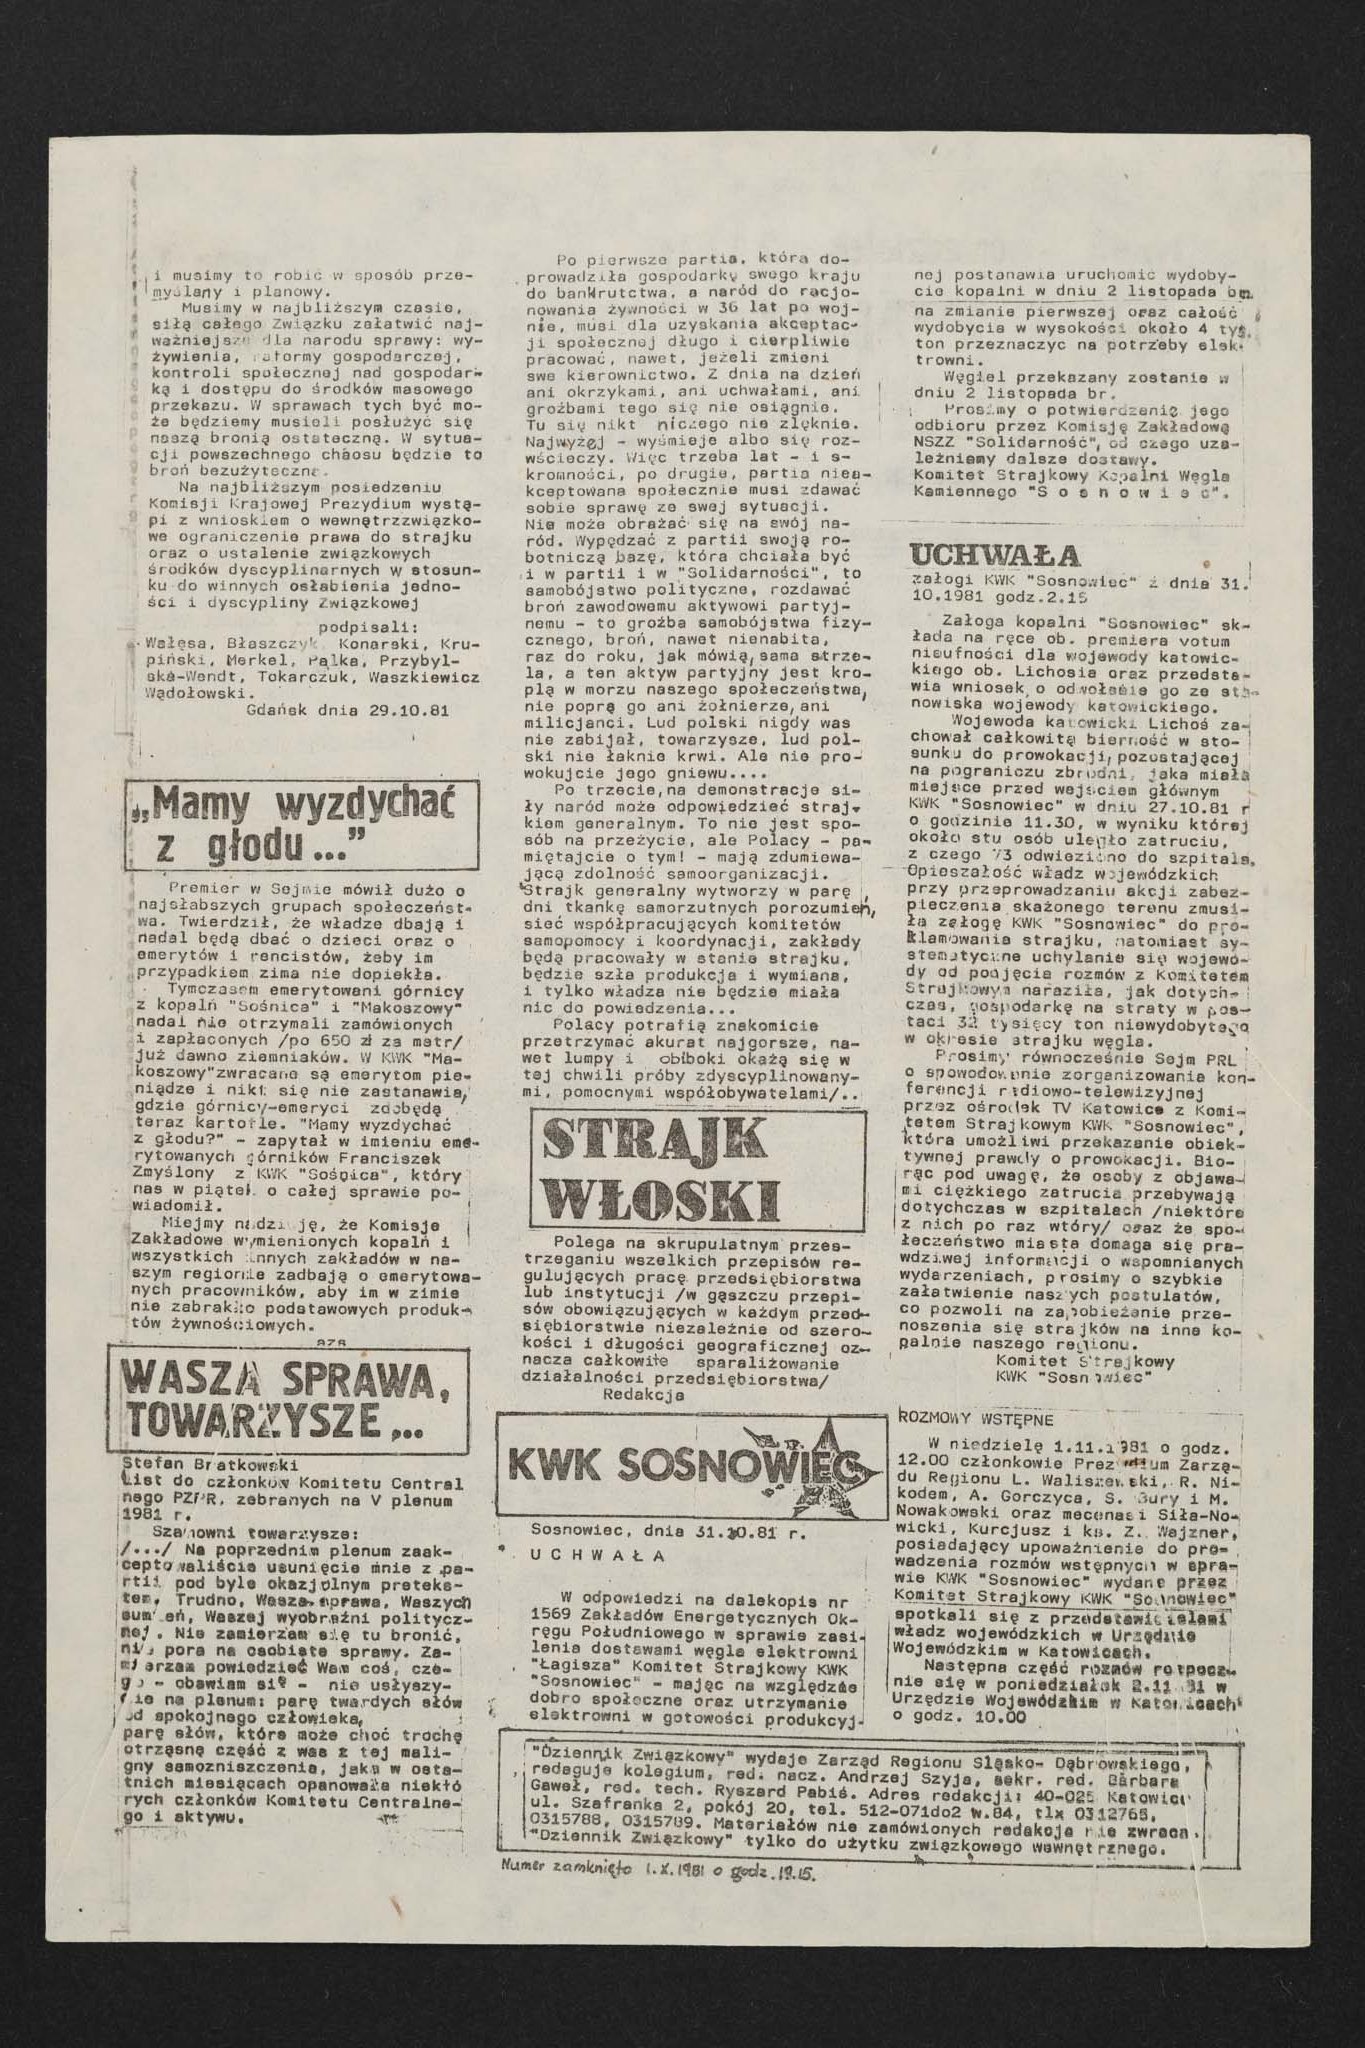 Dziennik związkowy nr 49 2.11.1981